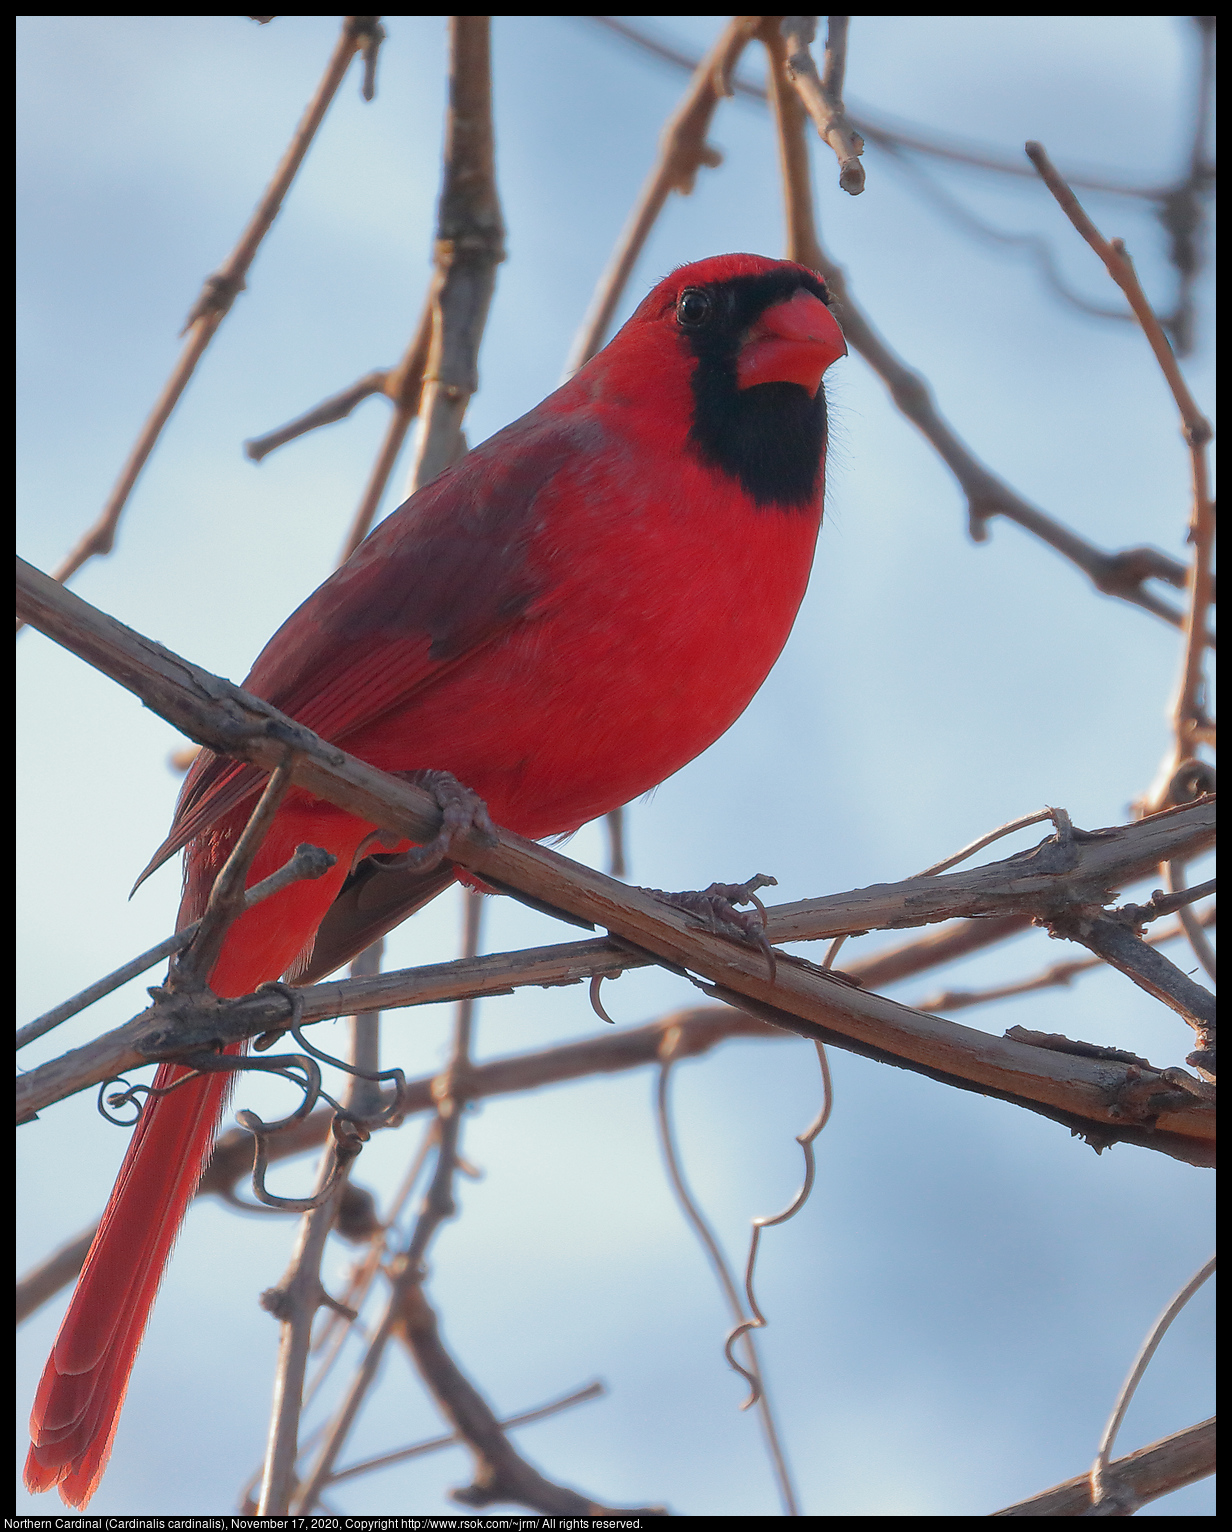 Northern Cardinal (Cardinalis cardinalis), November 17, 2020